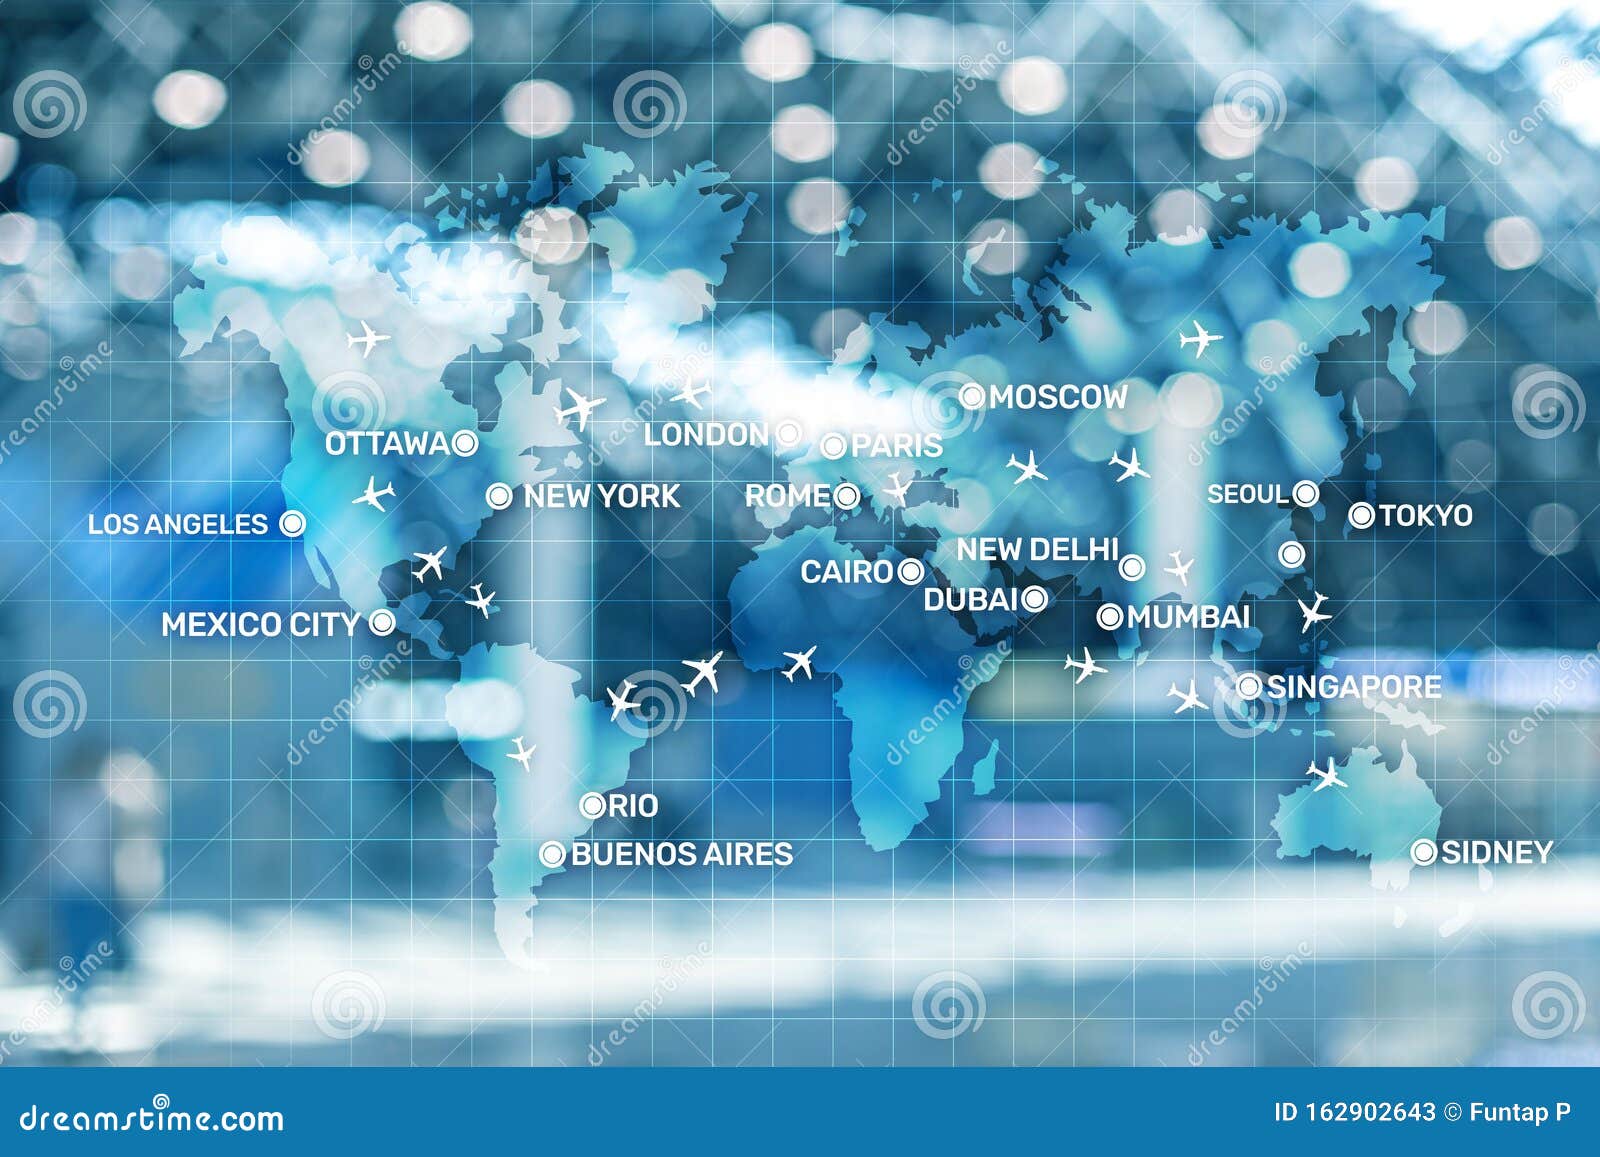 Mapa Digital Con El Concepto De Aviones Alrededor Del Mundo Blue Maps Fondos  De Pantalla De Aviación Con Aviones Sobre El Mapa Co Stock de ilustración -  Ilustración de ottawa, digital: 162902643